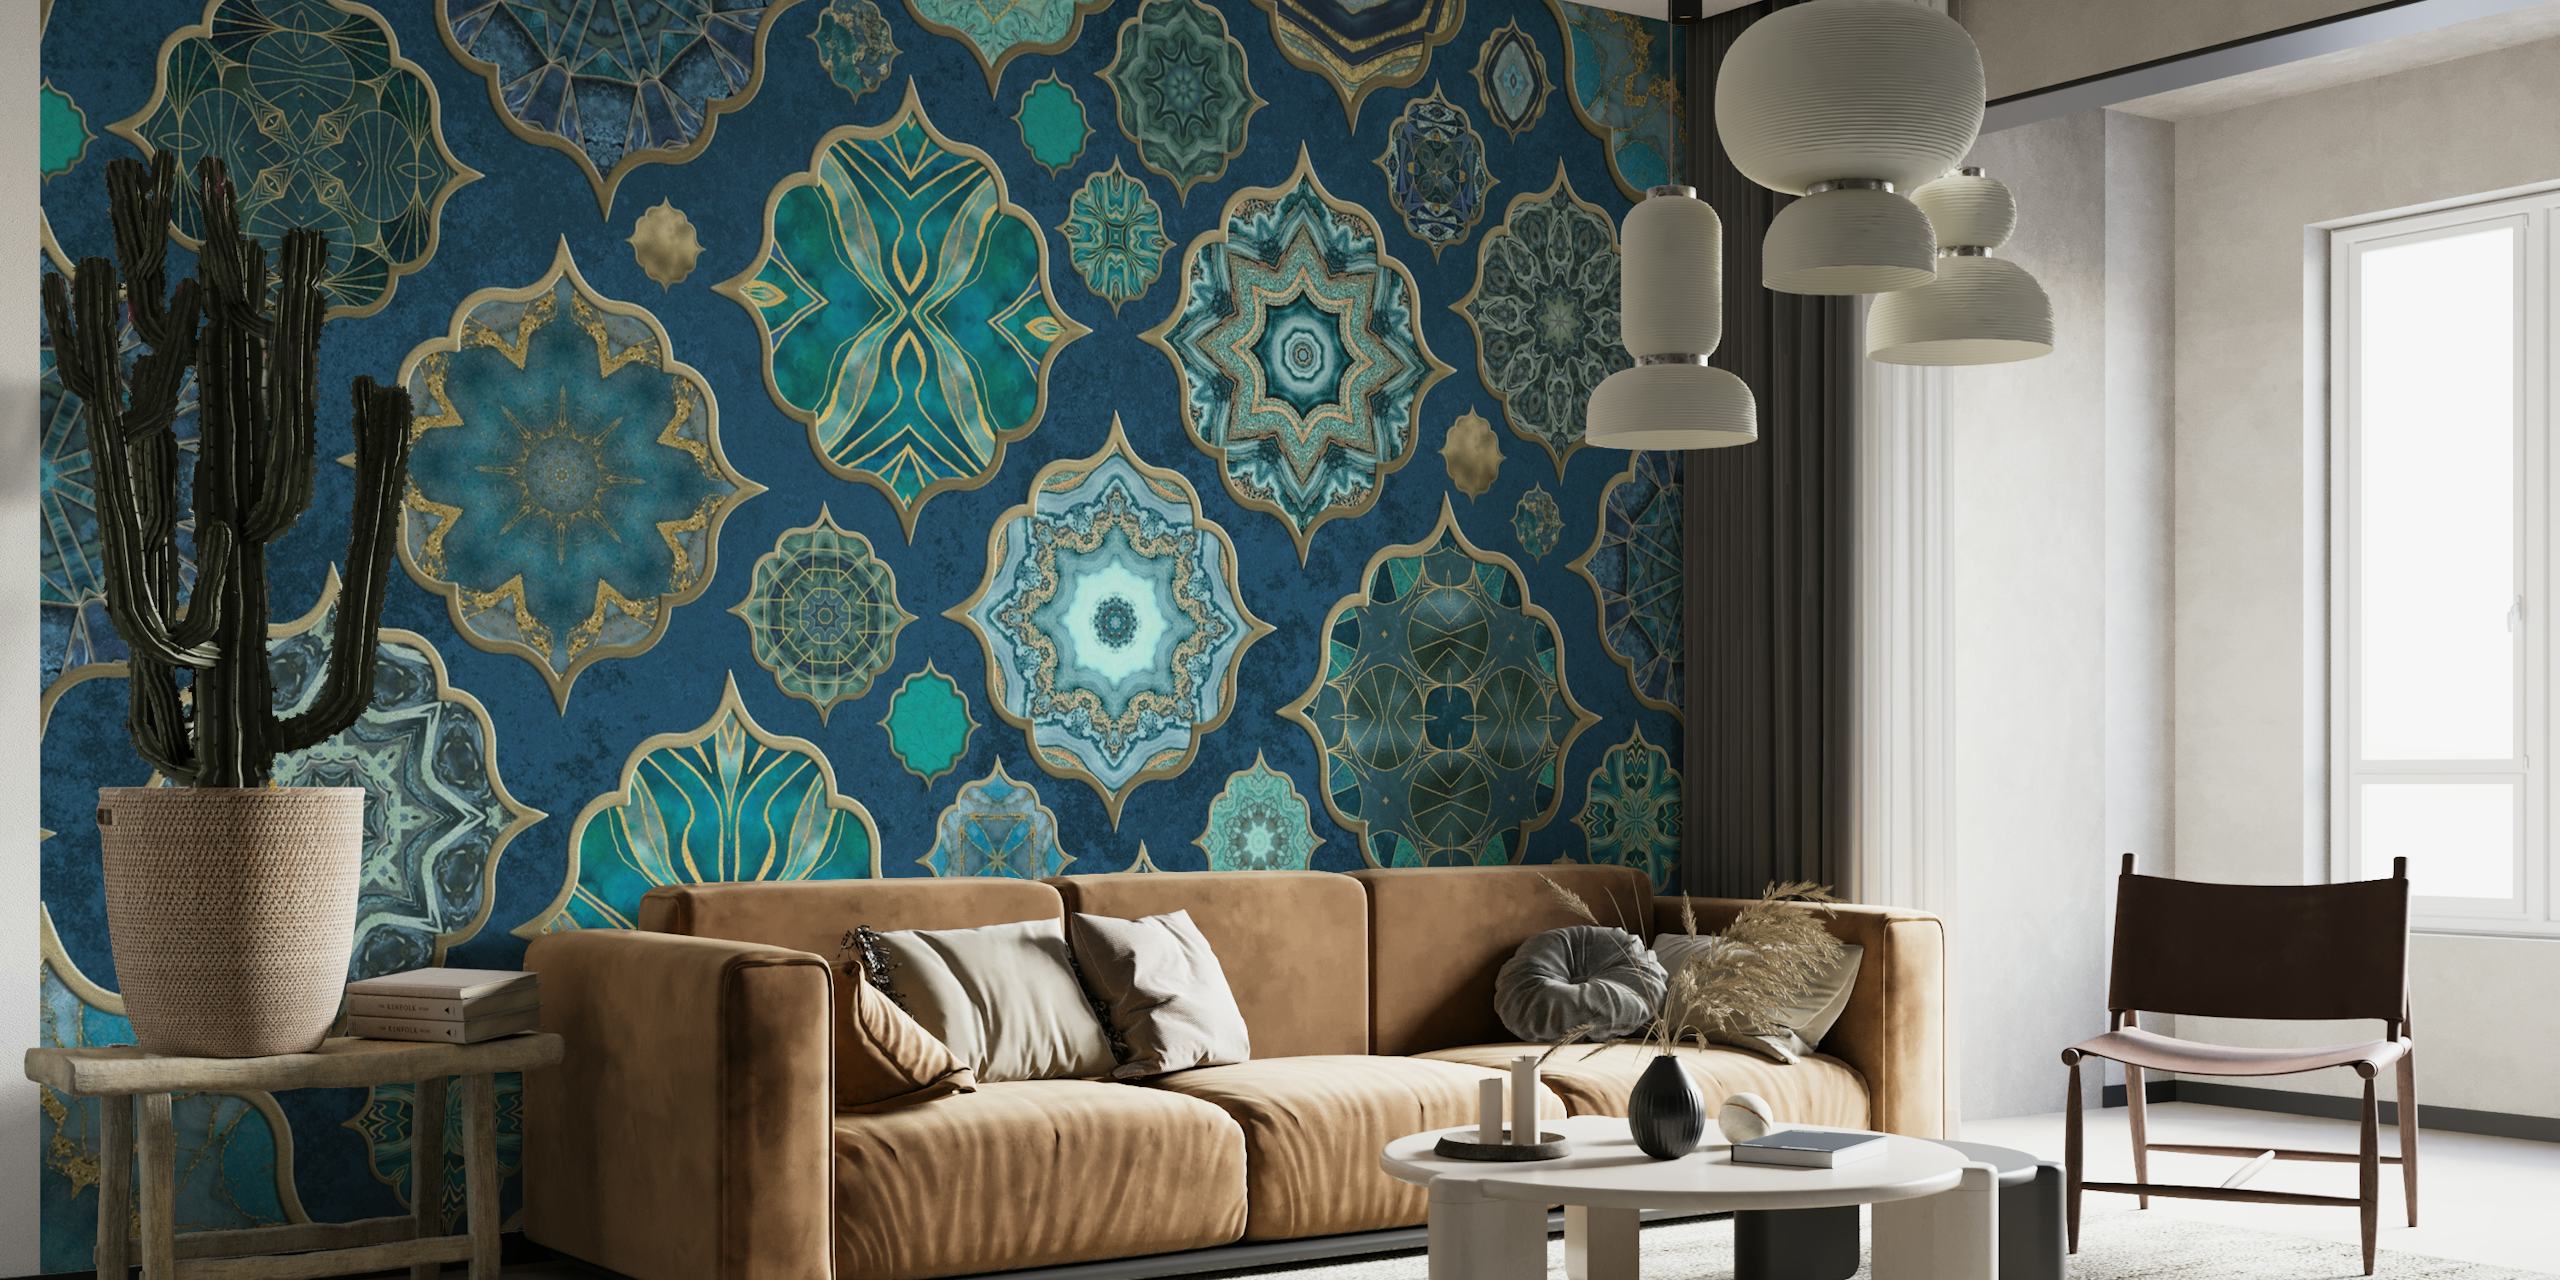 Mural de pared con motivos de azulejos de estilo marroquí en tonos verde azulado y azul marino con detalles dorados